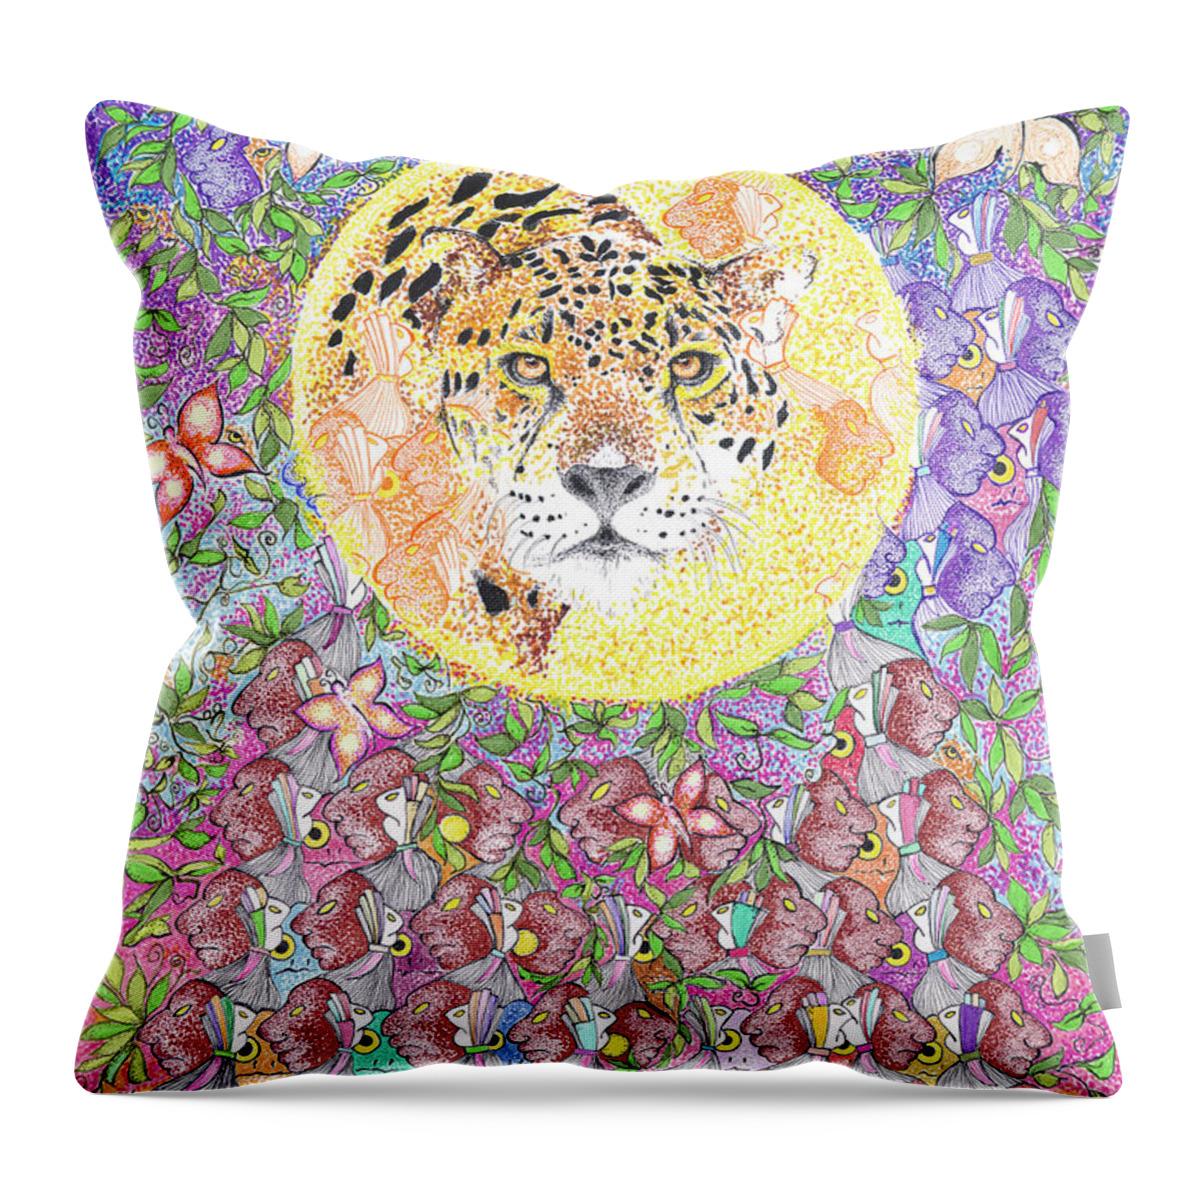 Jaguar Throw Pillow featuring the drawing Jaguar Night by Doug Johnson